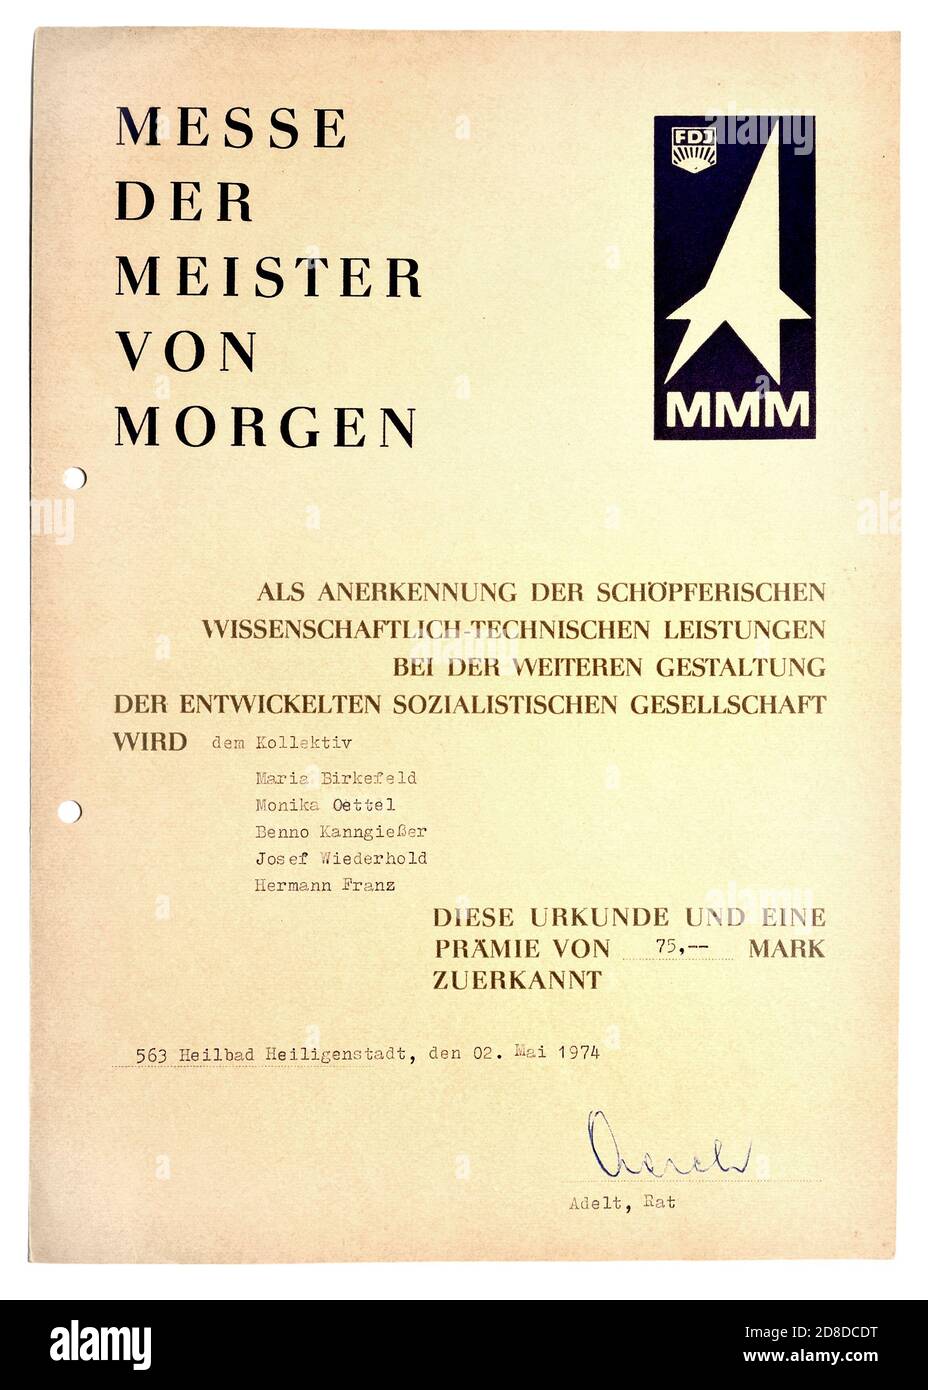 Ostdeutsche Urkunde aus der 'Messe der Meister von Morgen' (Ein Jugendwettbewerb in der DDR) Anerkennung der „inspirierten wissenschaftlichen Stockfoto